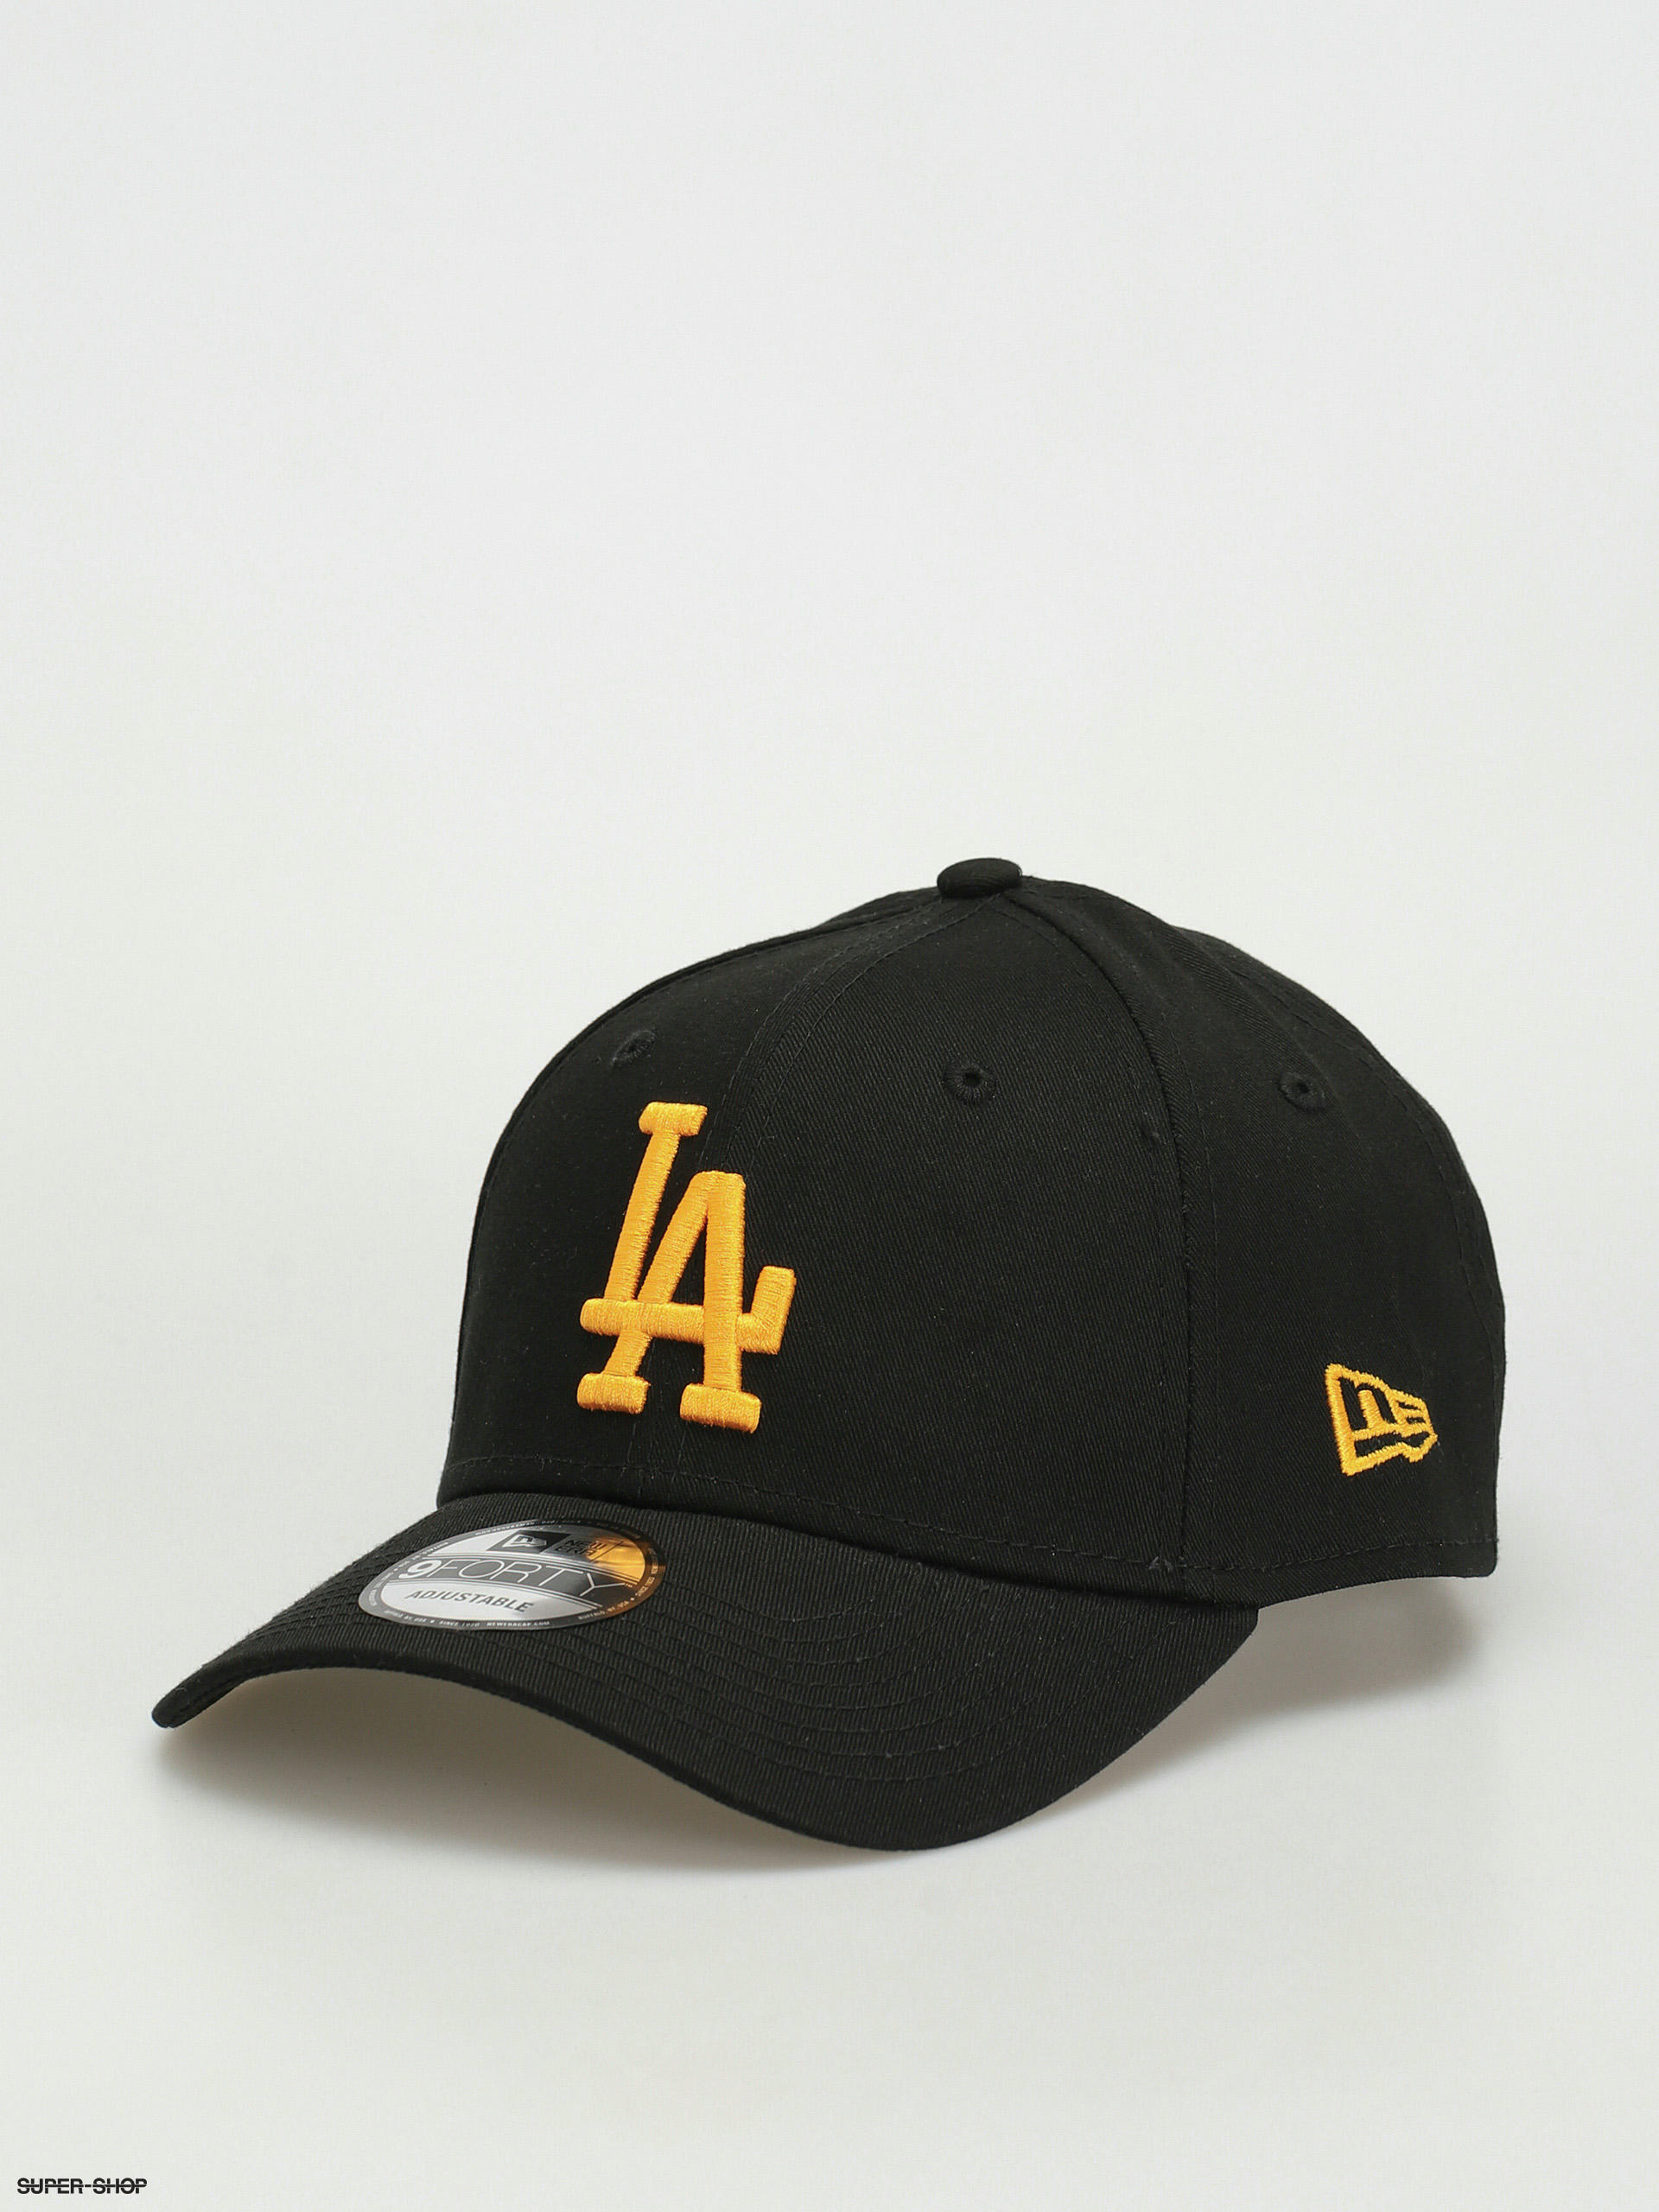 LA Dodgers Shirt Black Size L - $17 - From Starr